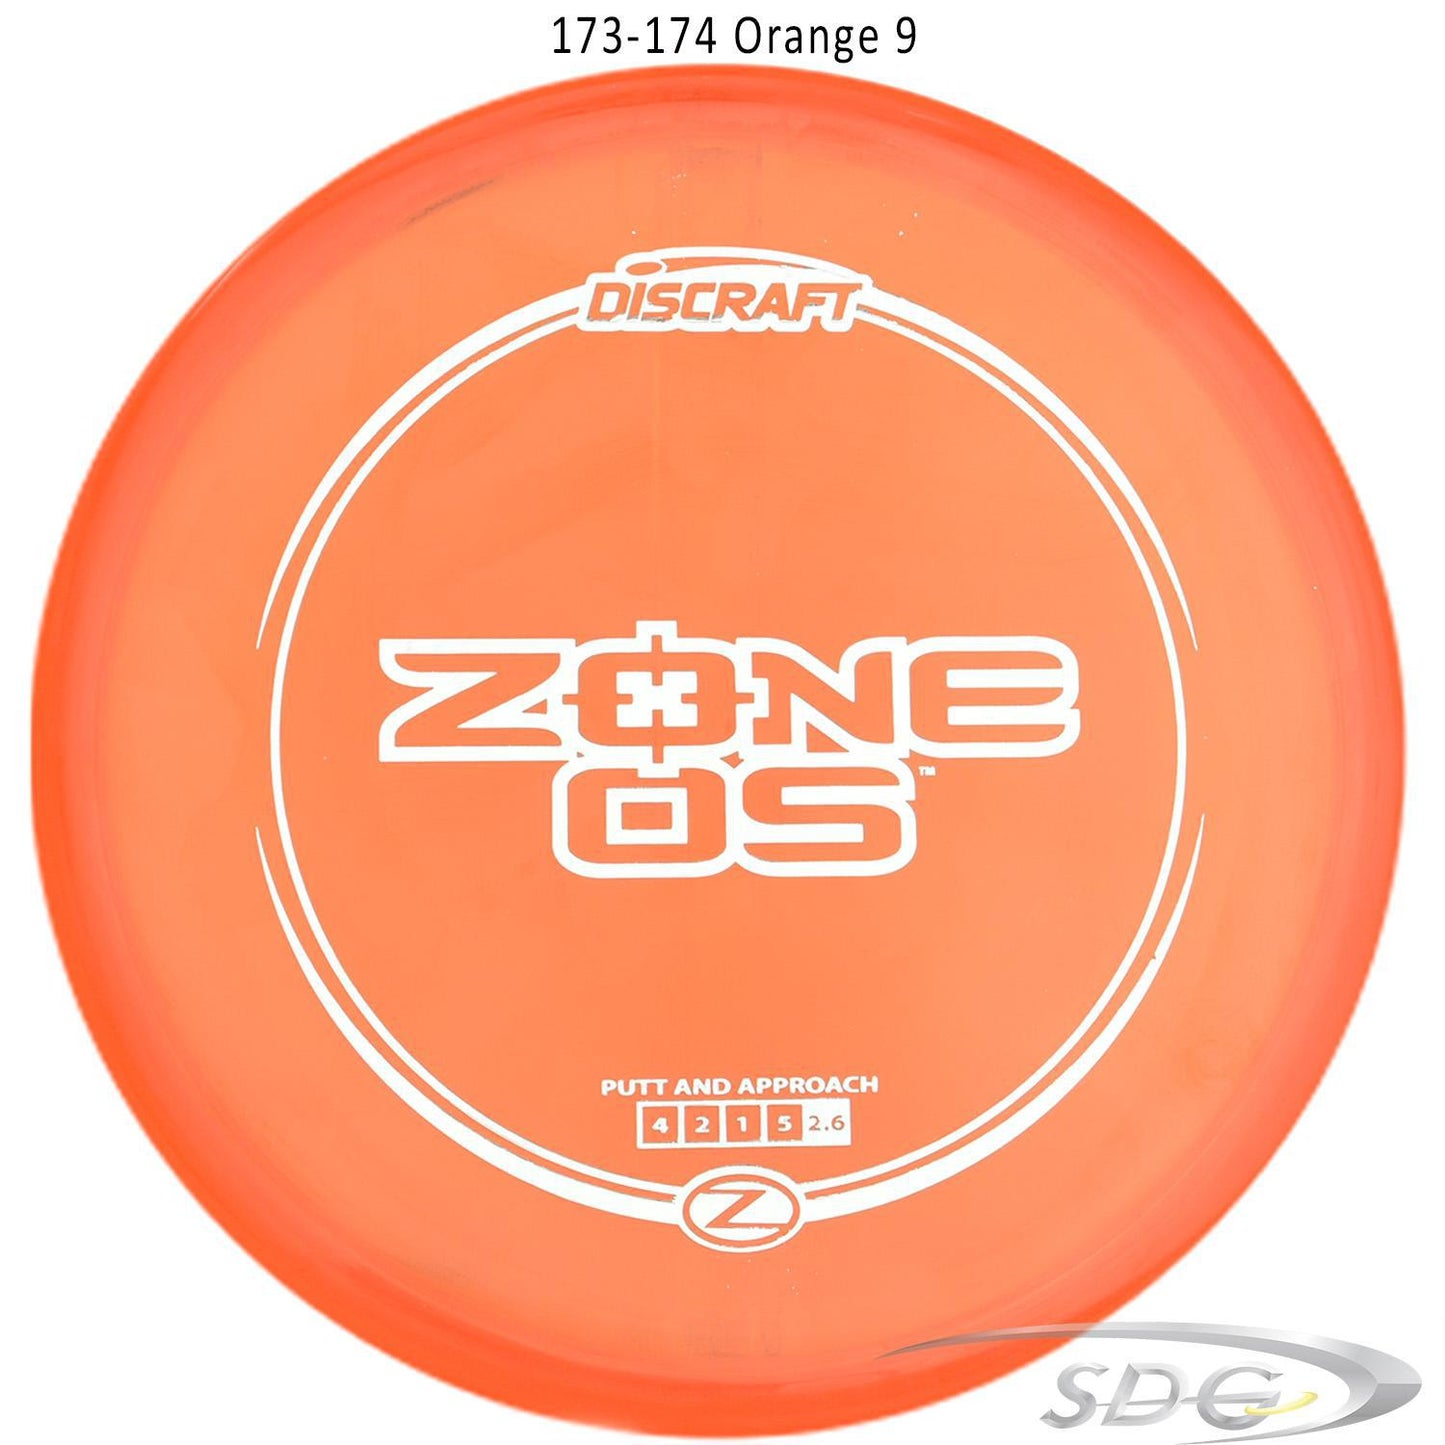 discraft-z-line-zone-os-disc-golf-putter-176-173-weights-1 173-174 Orange 9 